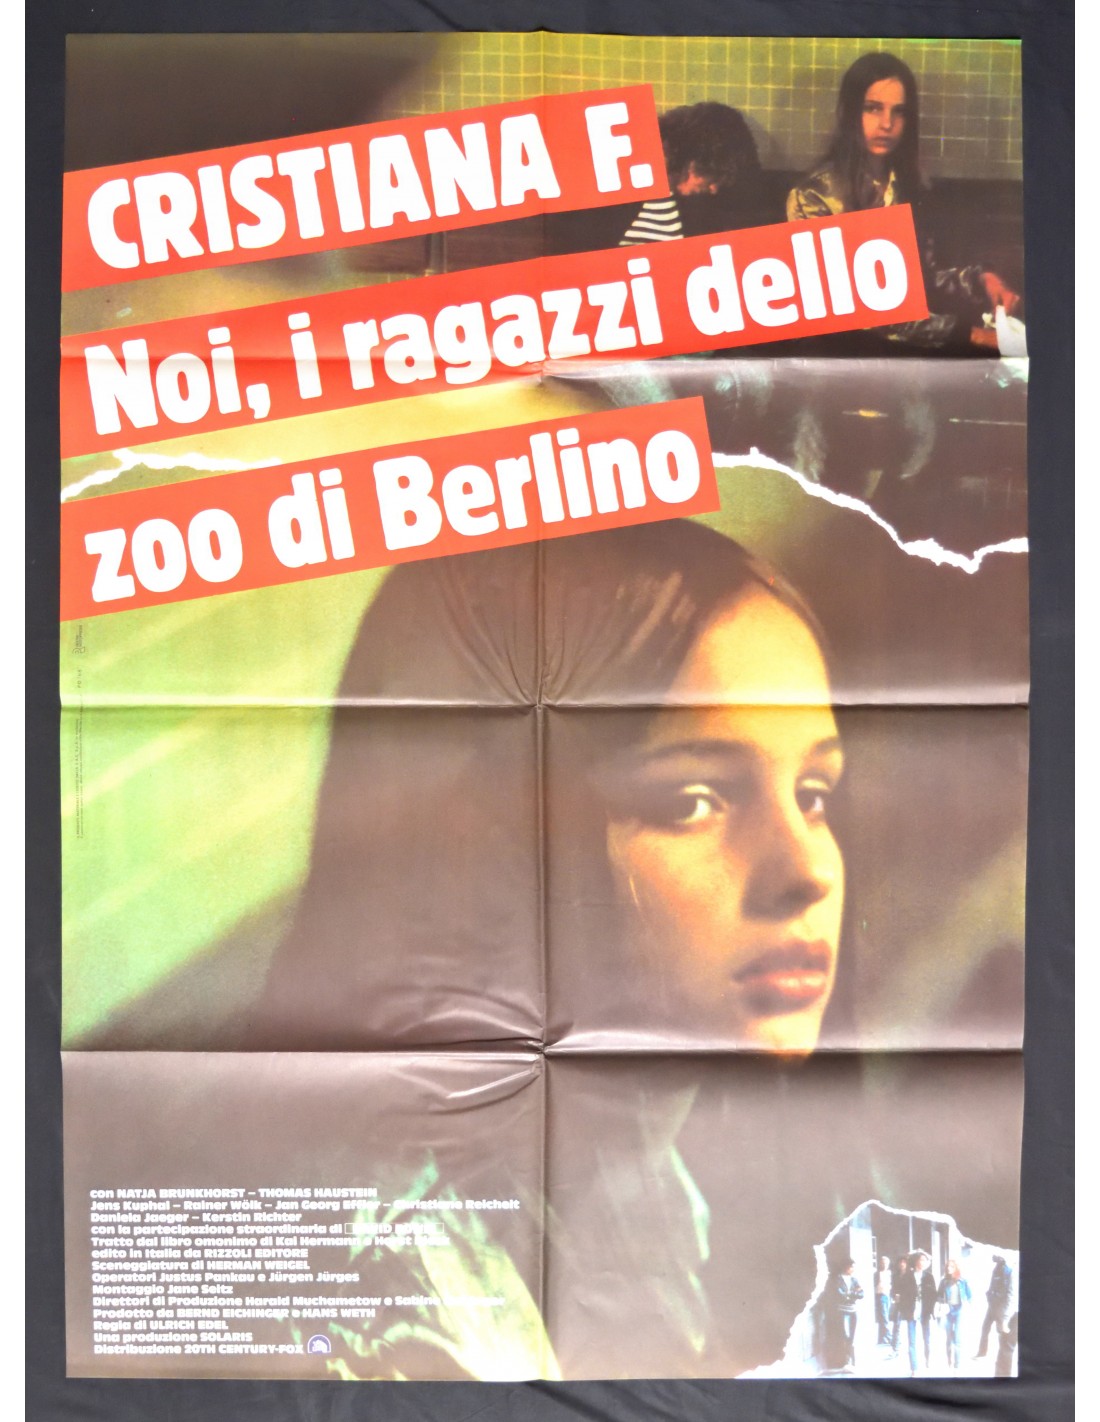 manifesto CRISTIANA F noi i ragazzzi dello zoo di berlino natja